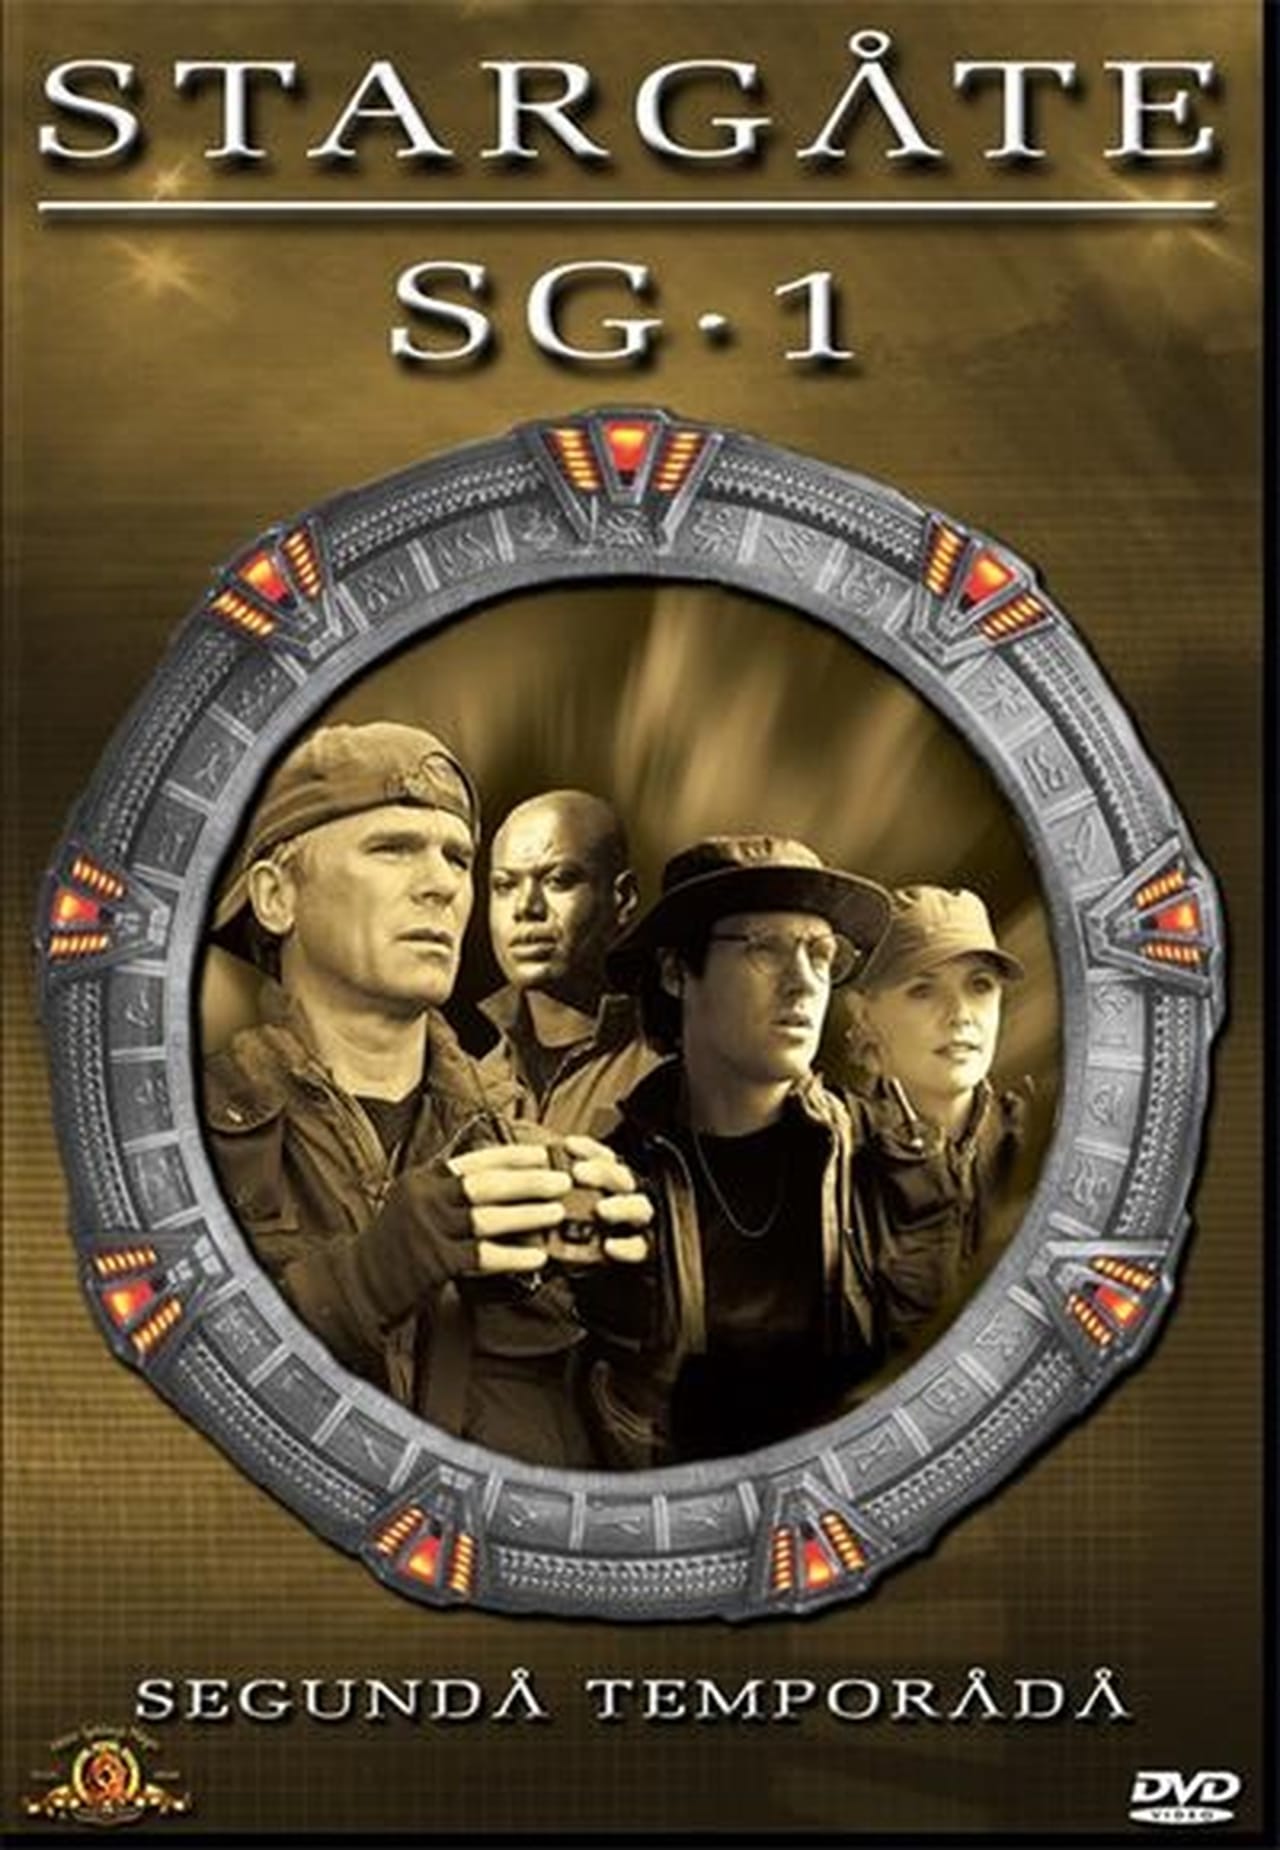 Image Stargate SG-1